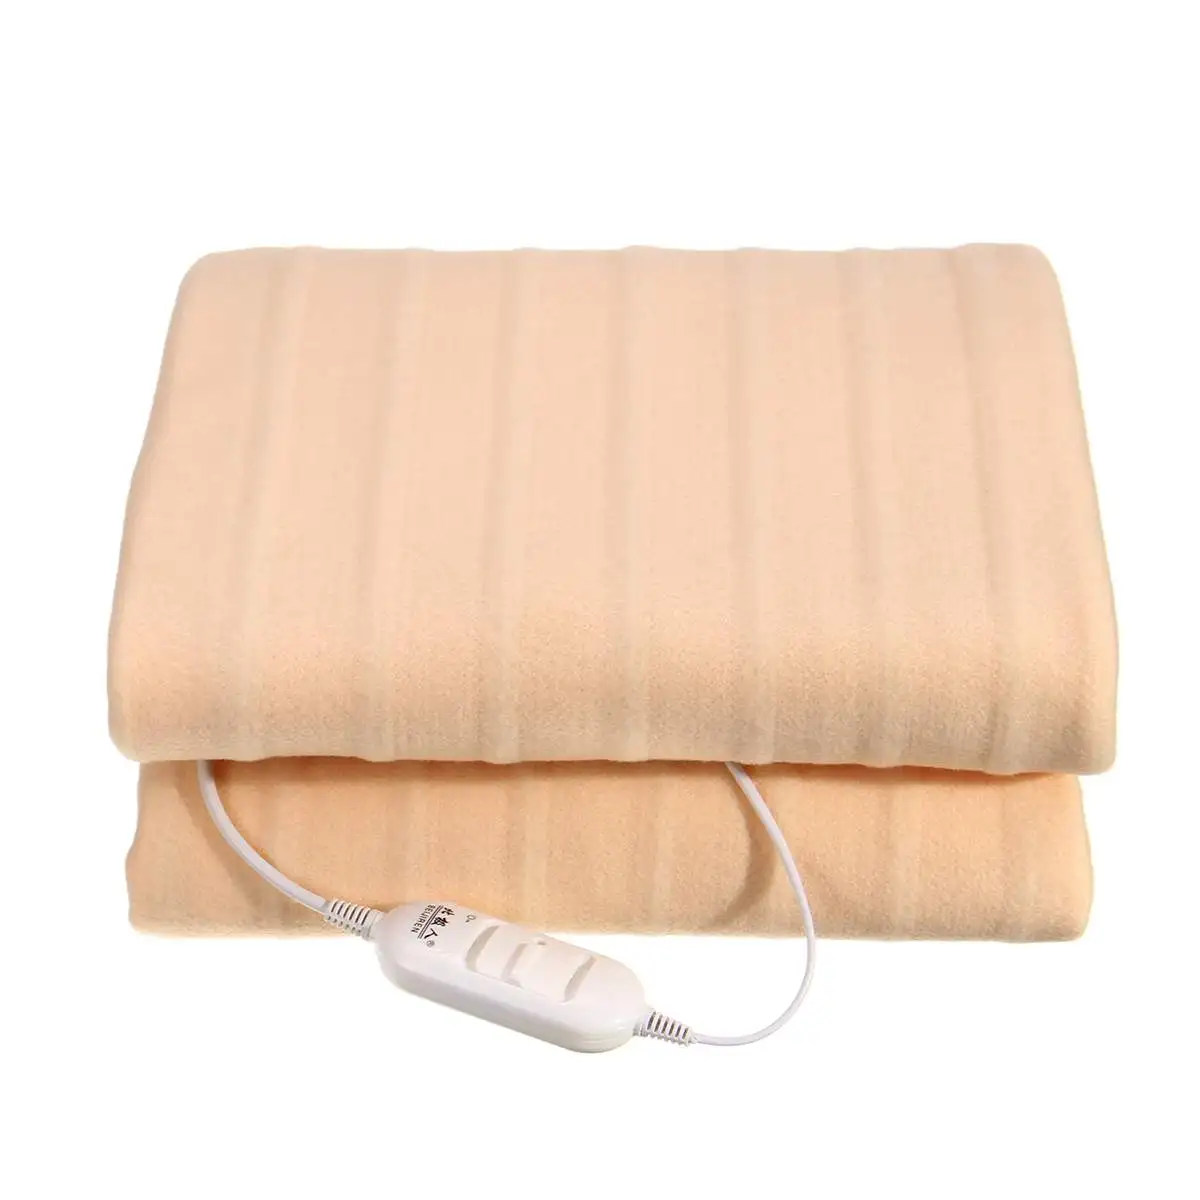 220 В 2 режима Водонепроницаемая электрическая грелка для тела зимняя теплая подстилка-кровать одеяло подогреватель для кровати